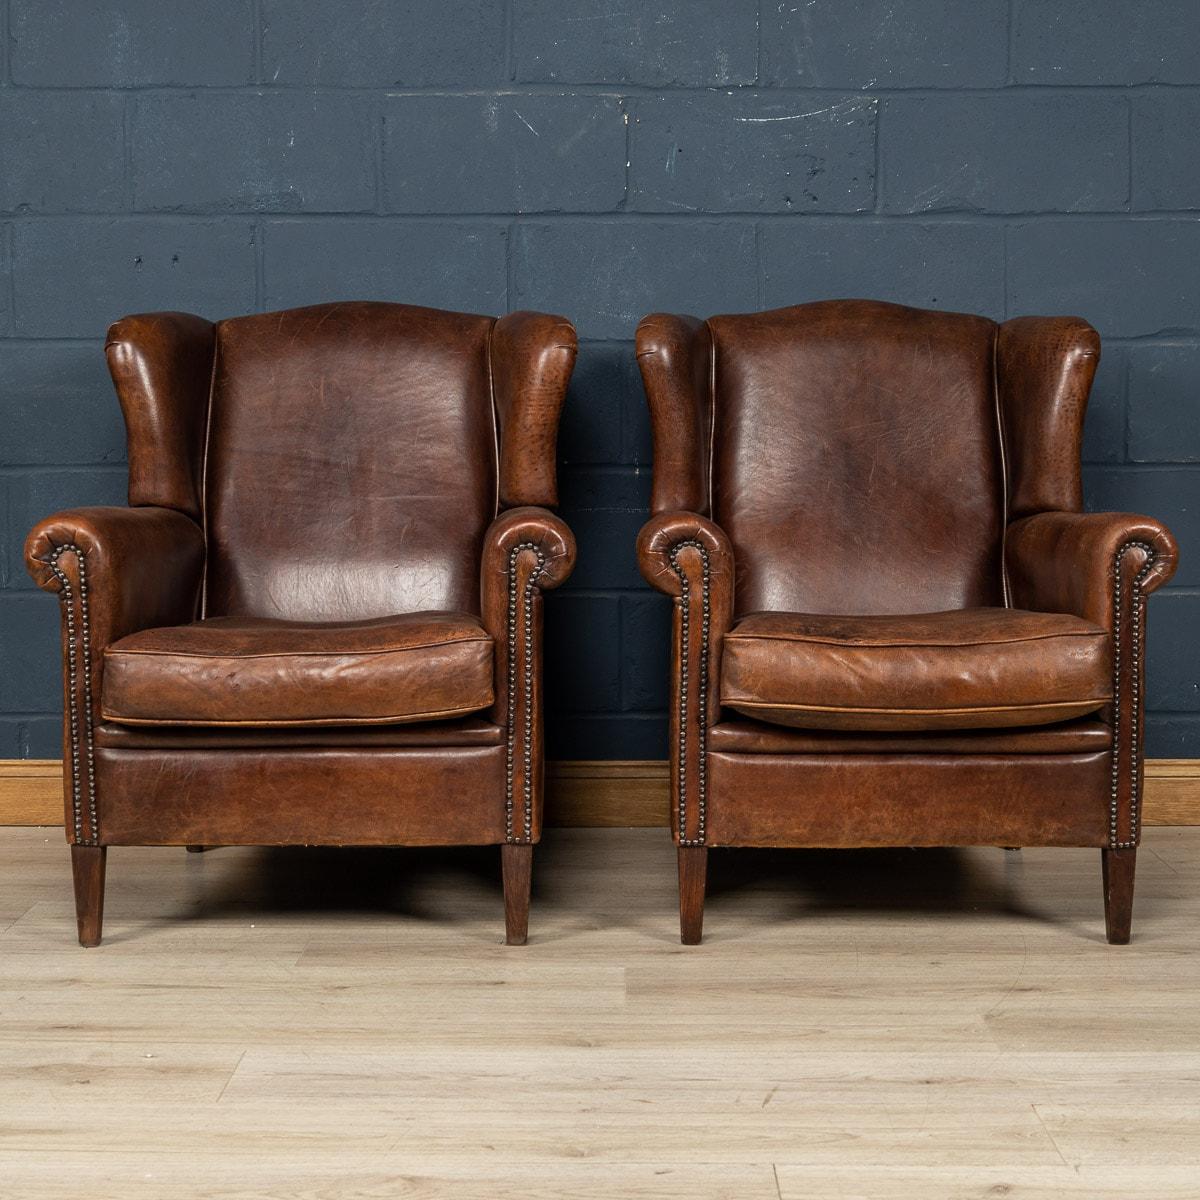 Ein wunderbares Paar lederne Ohrensessel. Die Stühle stammen aus der zweiten Hälfte des 20. Jahrhunderts und wurden von den besten niederländischen Handwerkern gefertigt, wobei der Massivholzrahmen mit hochwertigem, honigfarbenem Schafsleder